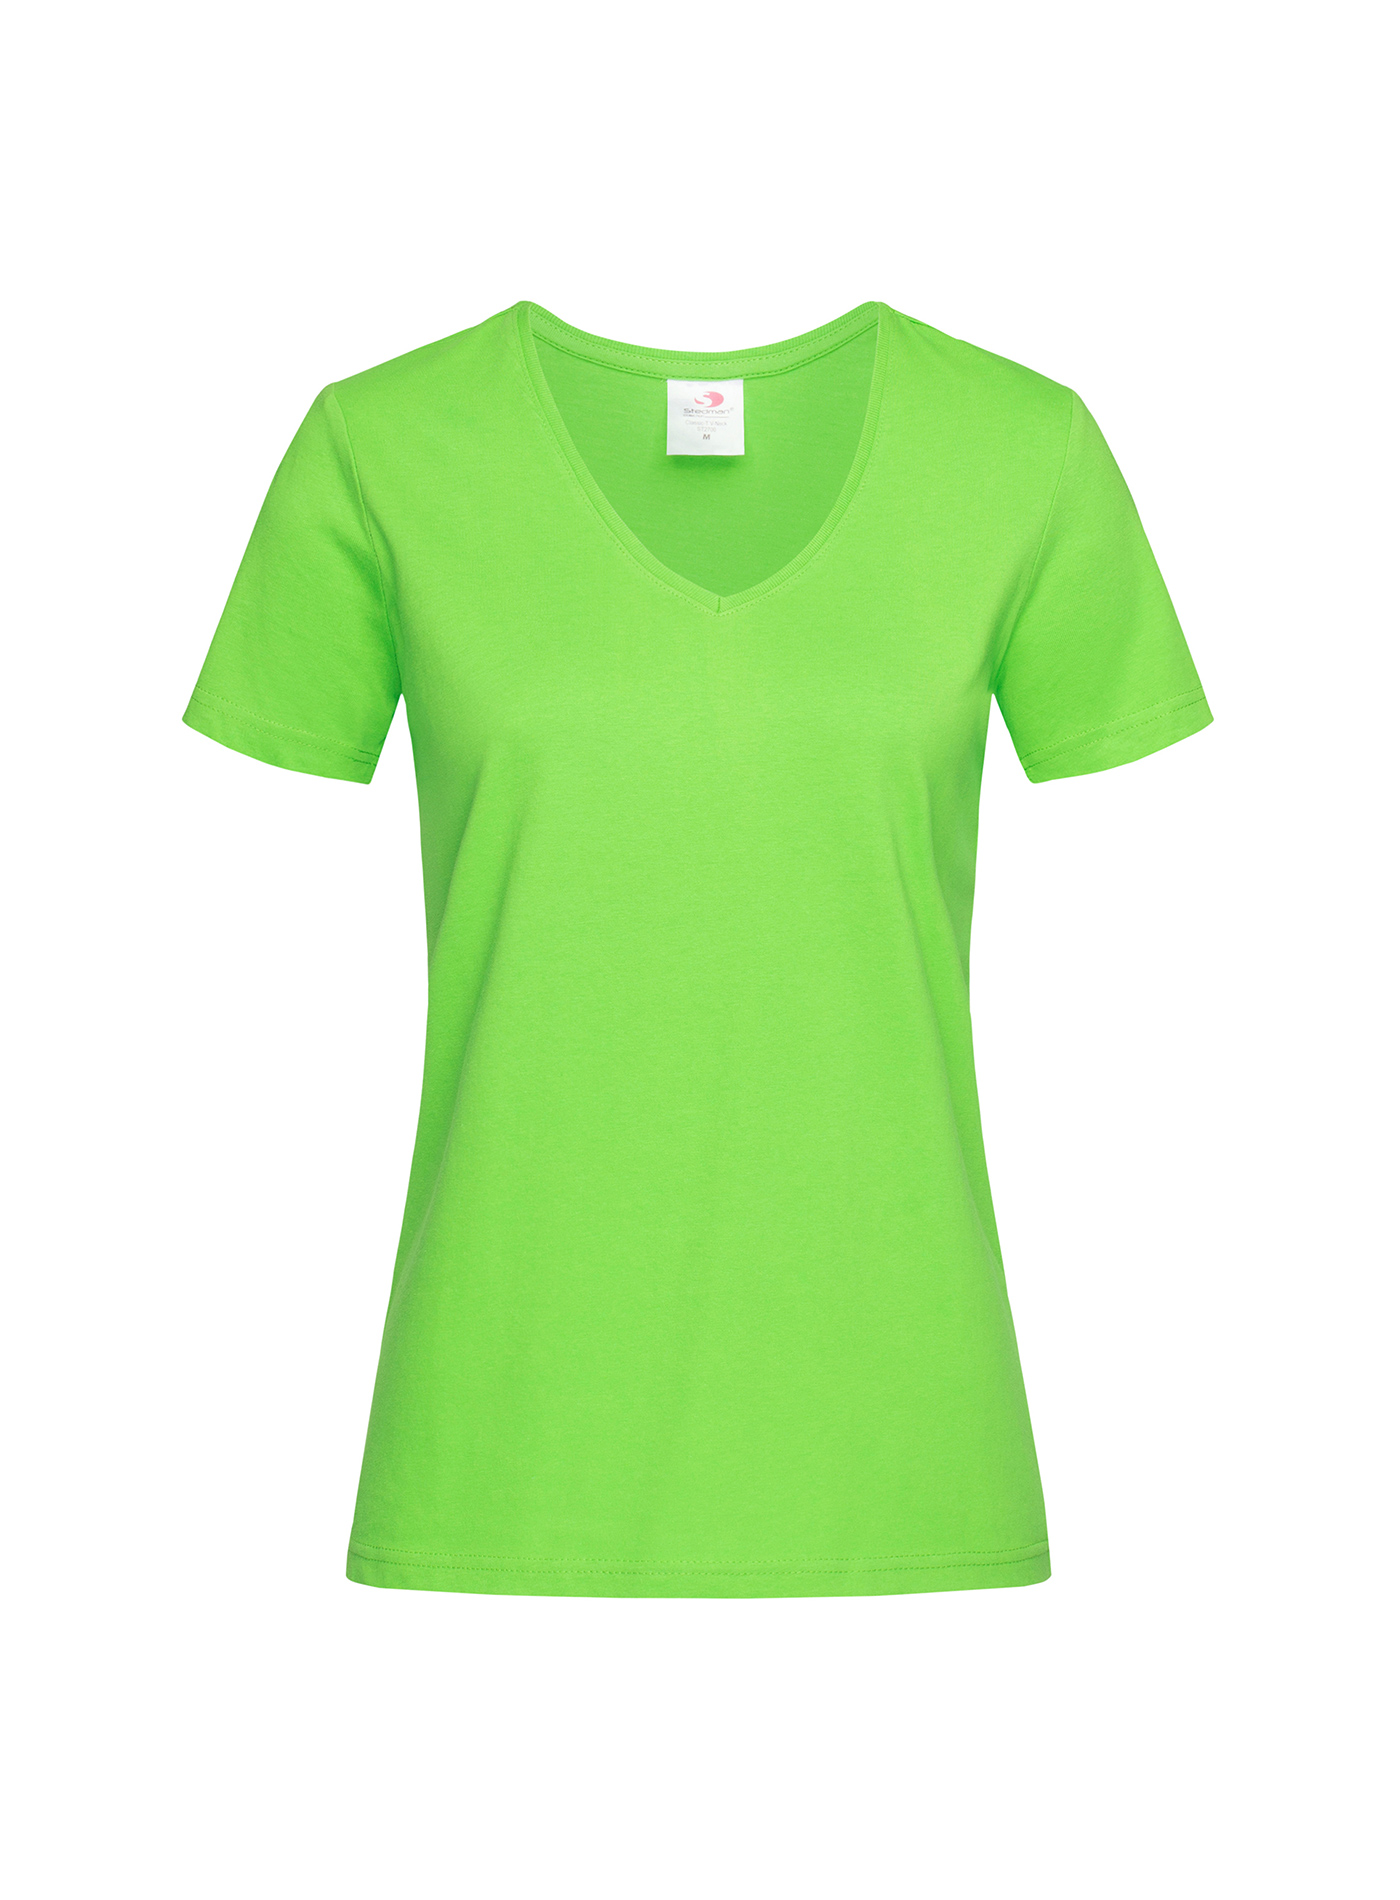 Dámské tričko s V-výstřihem Stedman - Neonová zelená M